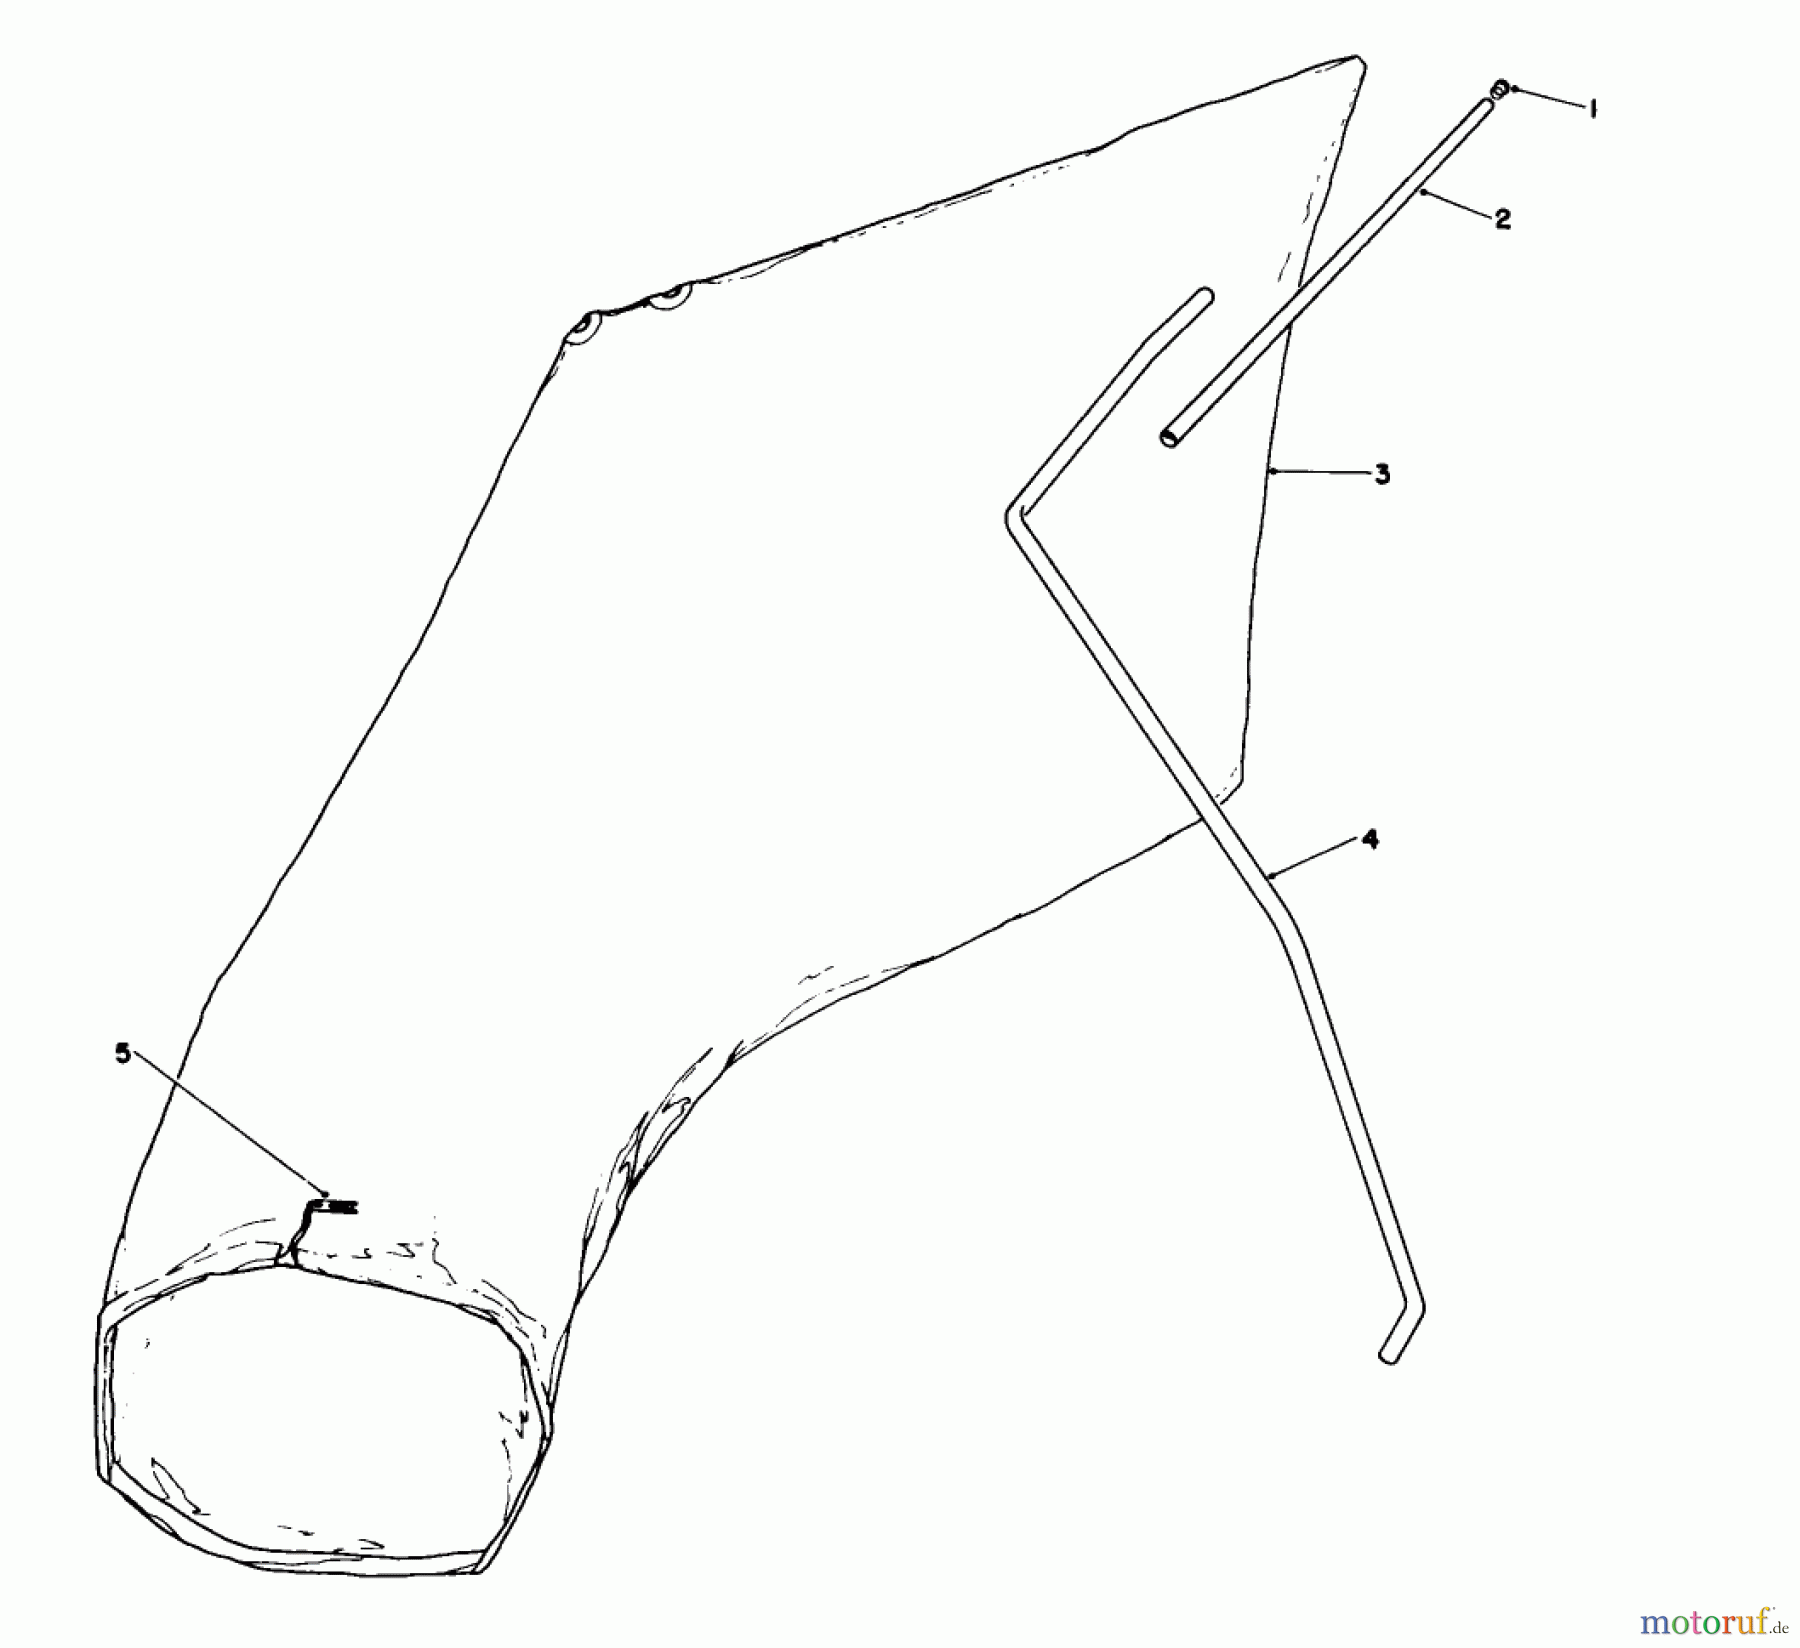  Toro Neu Mowers, Walk-Behind Seite 1 16212C - Toro Lawnmower, 1989 (9000001-9999999) GIANT BAGGING KIT NO. 29-9750 (OPTIONAL)